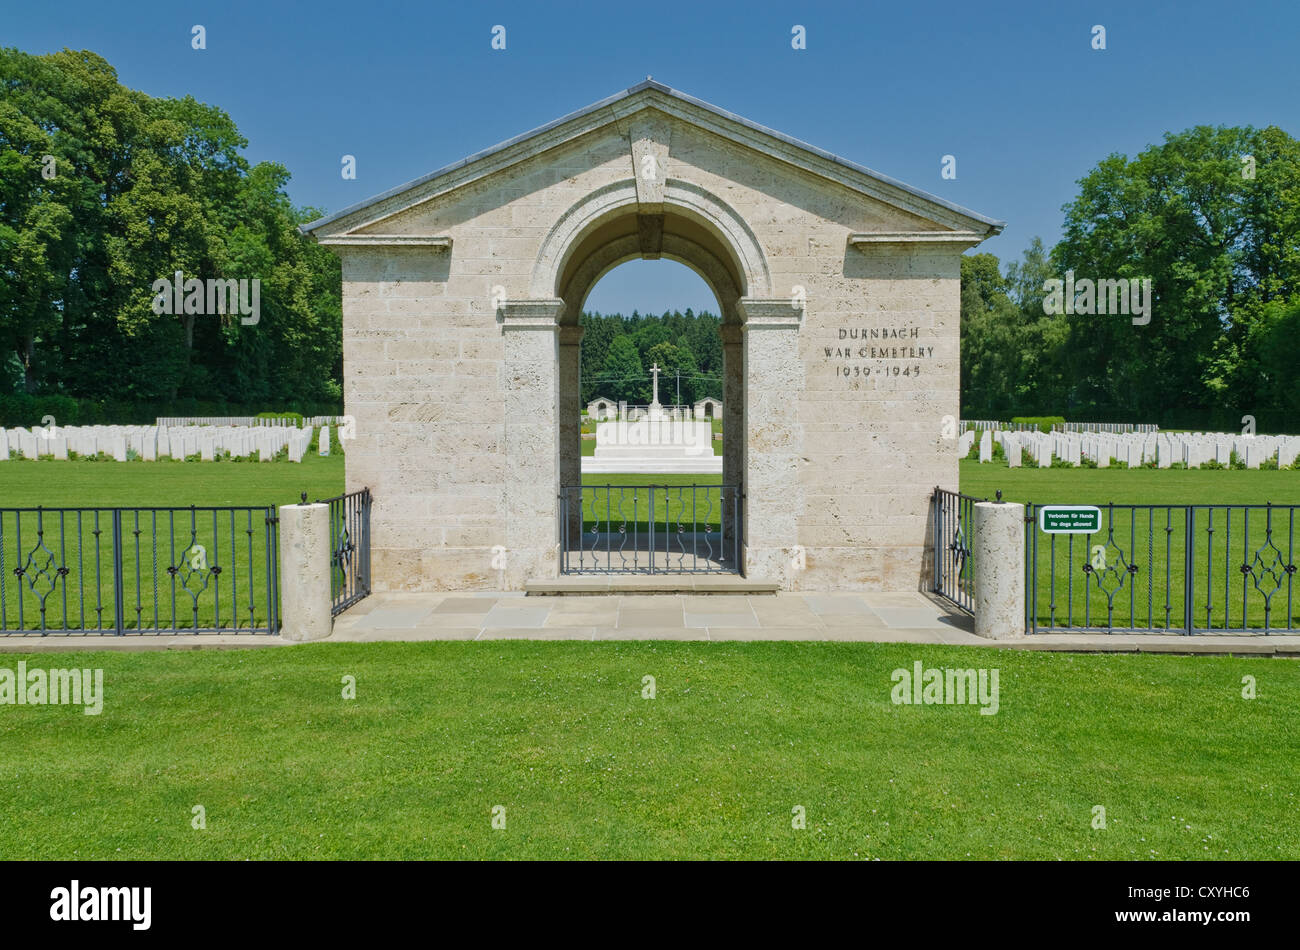 Cementerio de Guerra Durnbach, el lugar donde descansan los restos de 2.960 soldados que murieron en la WW2, Duernbach, Gmund am Tegernsee, Baviera Foto de stock